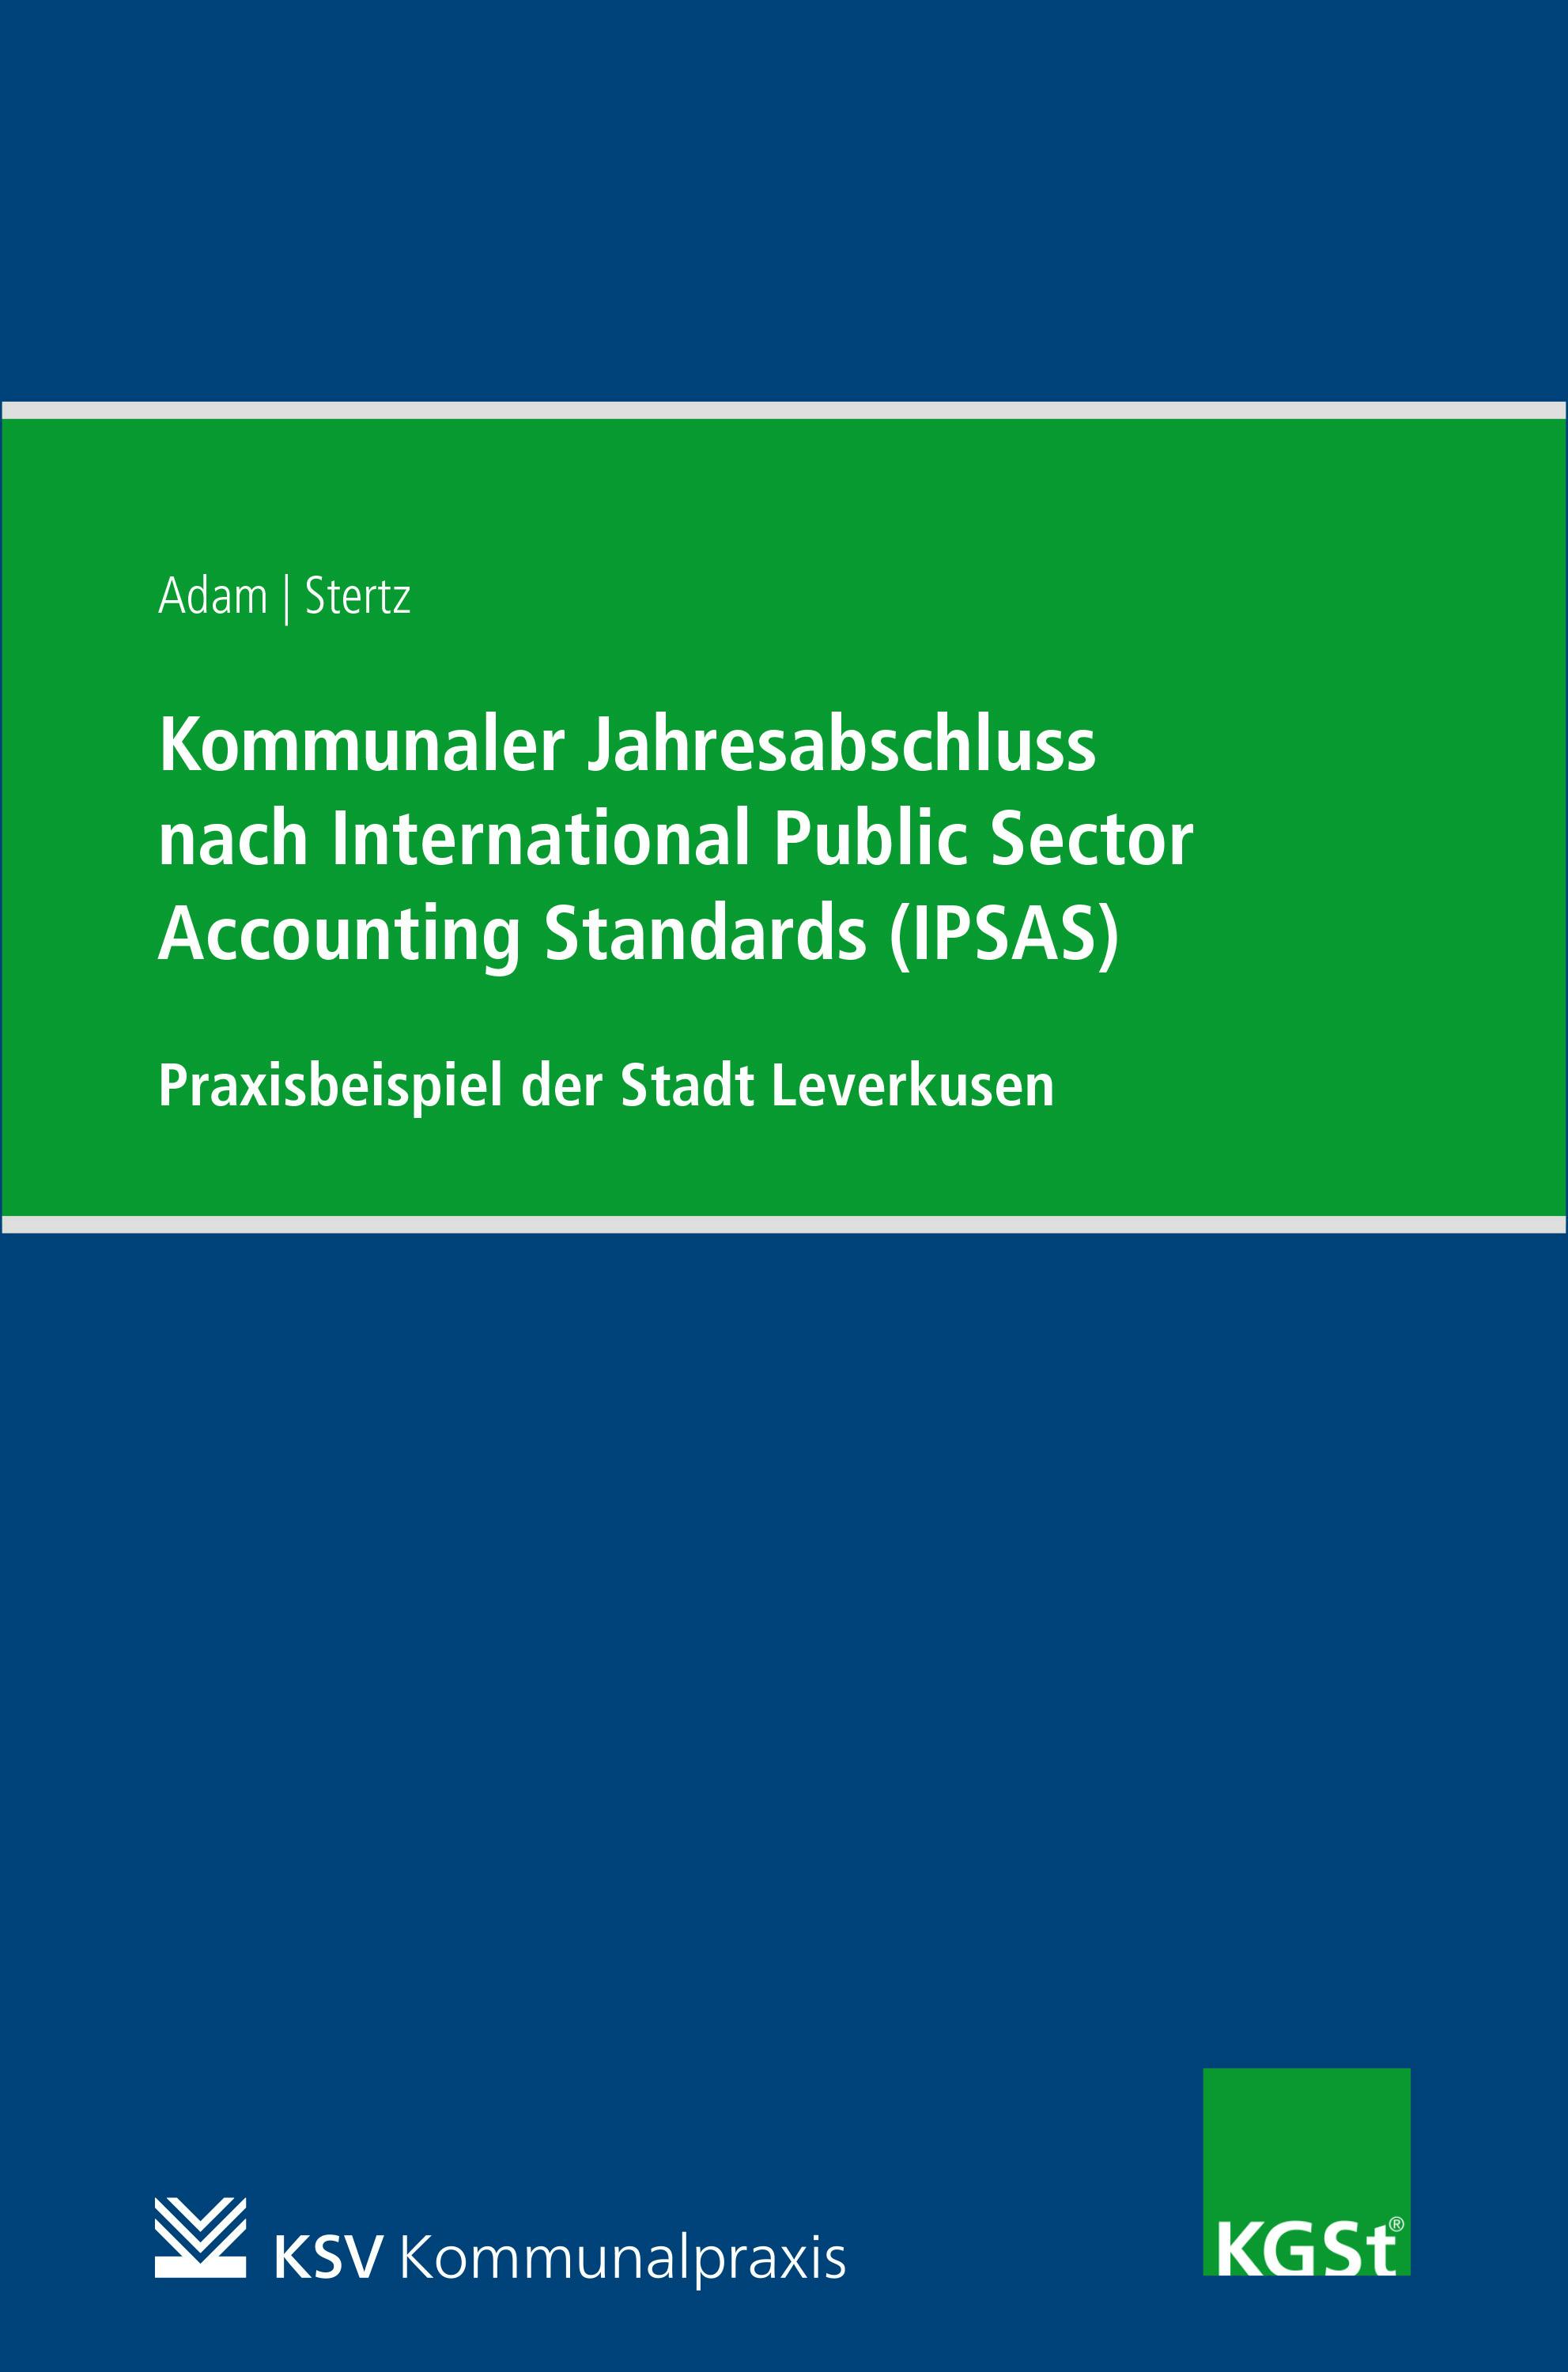 Kommunaler Jahresabschluss nach International Public Sector Accounting Standards (IPSAS) am Beispiel der Stadt Leverkusen - Berit Adam, Andrea Stertz